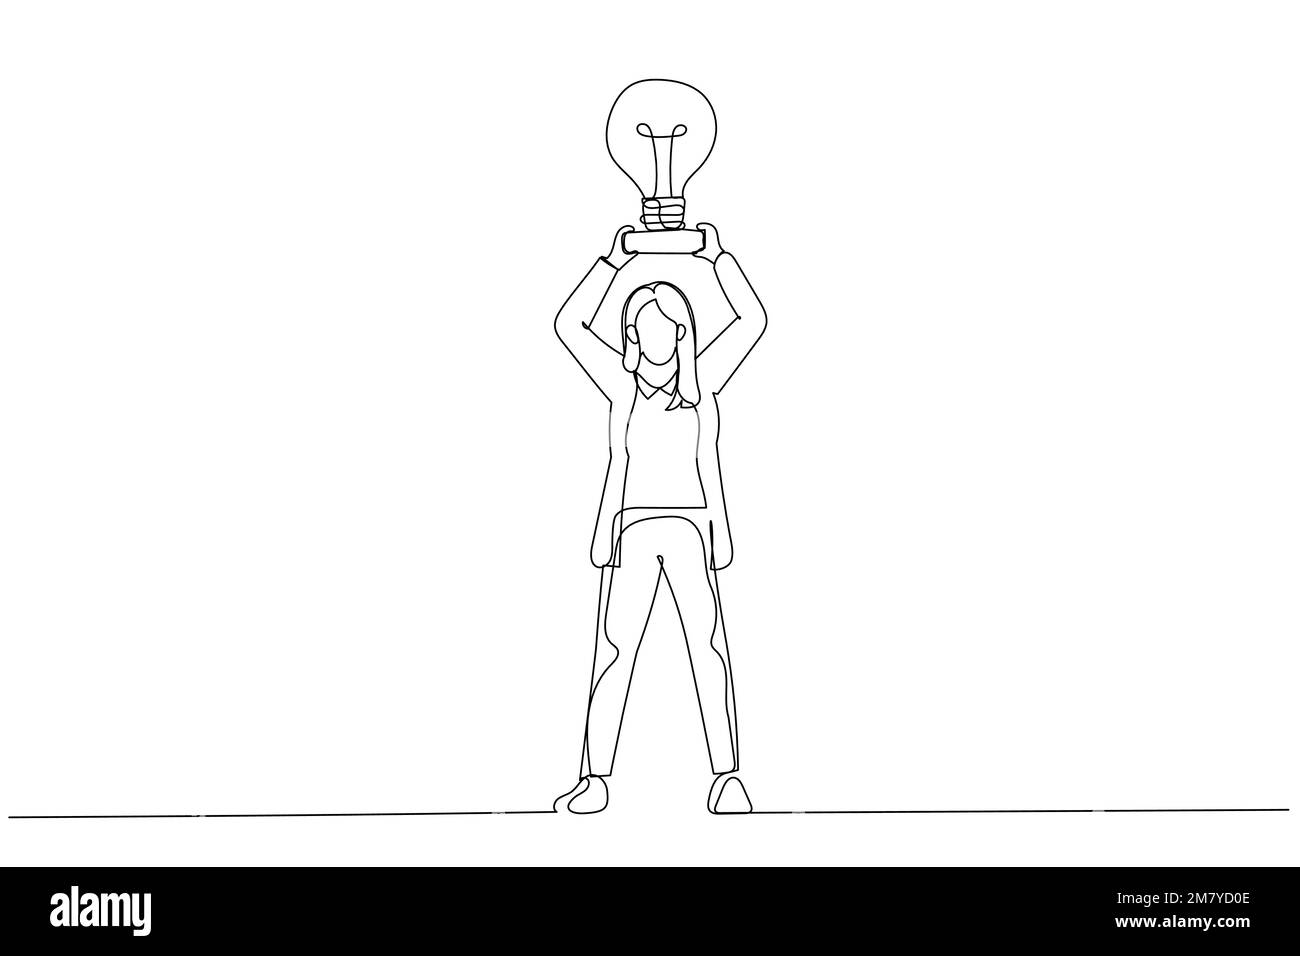 Abbildung: Hände einer Geschäftsfrau nehmen einen Trophäenbecher, der wie eine Glühbirne auf einem Sockel aussieht. Einzeiliges Kunstdesign Stock Vektor